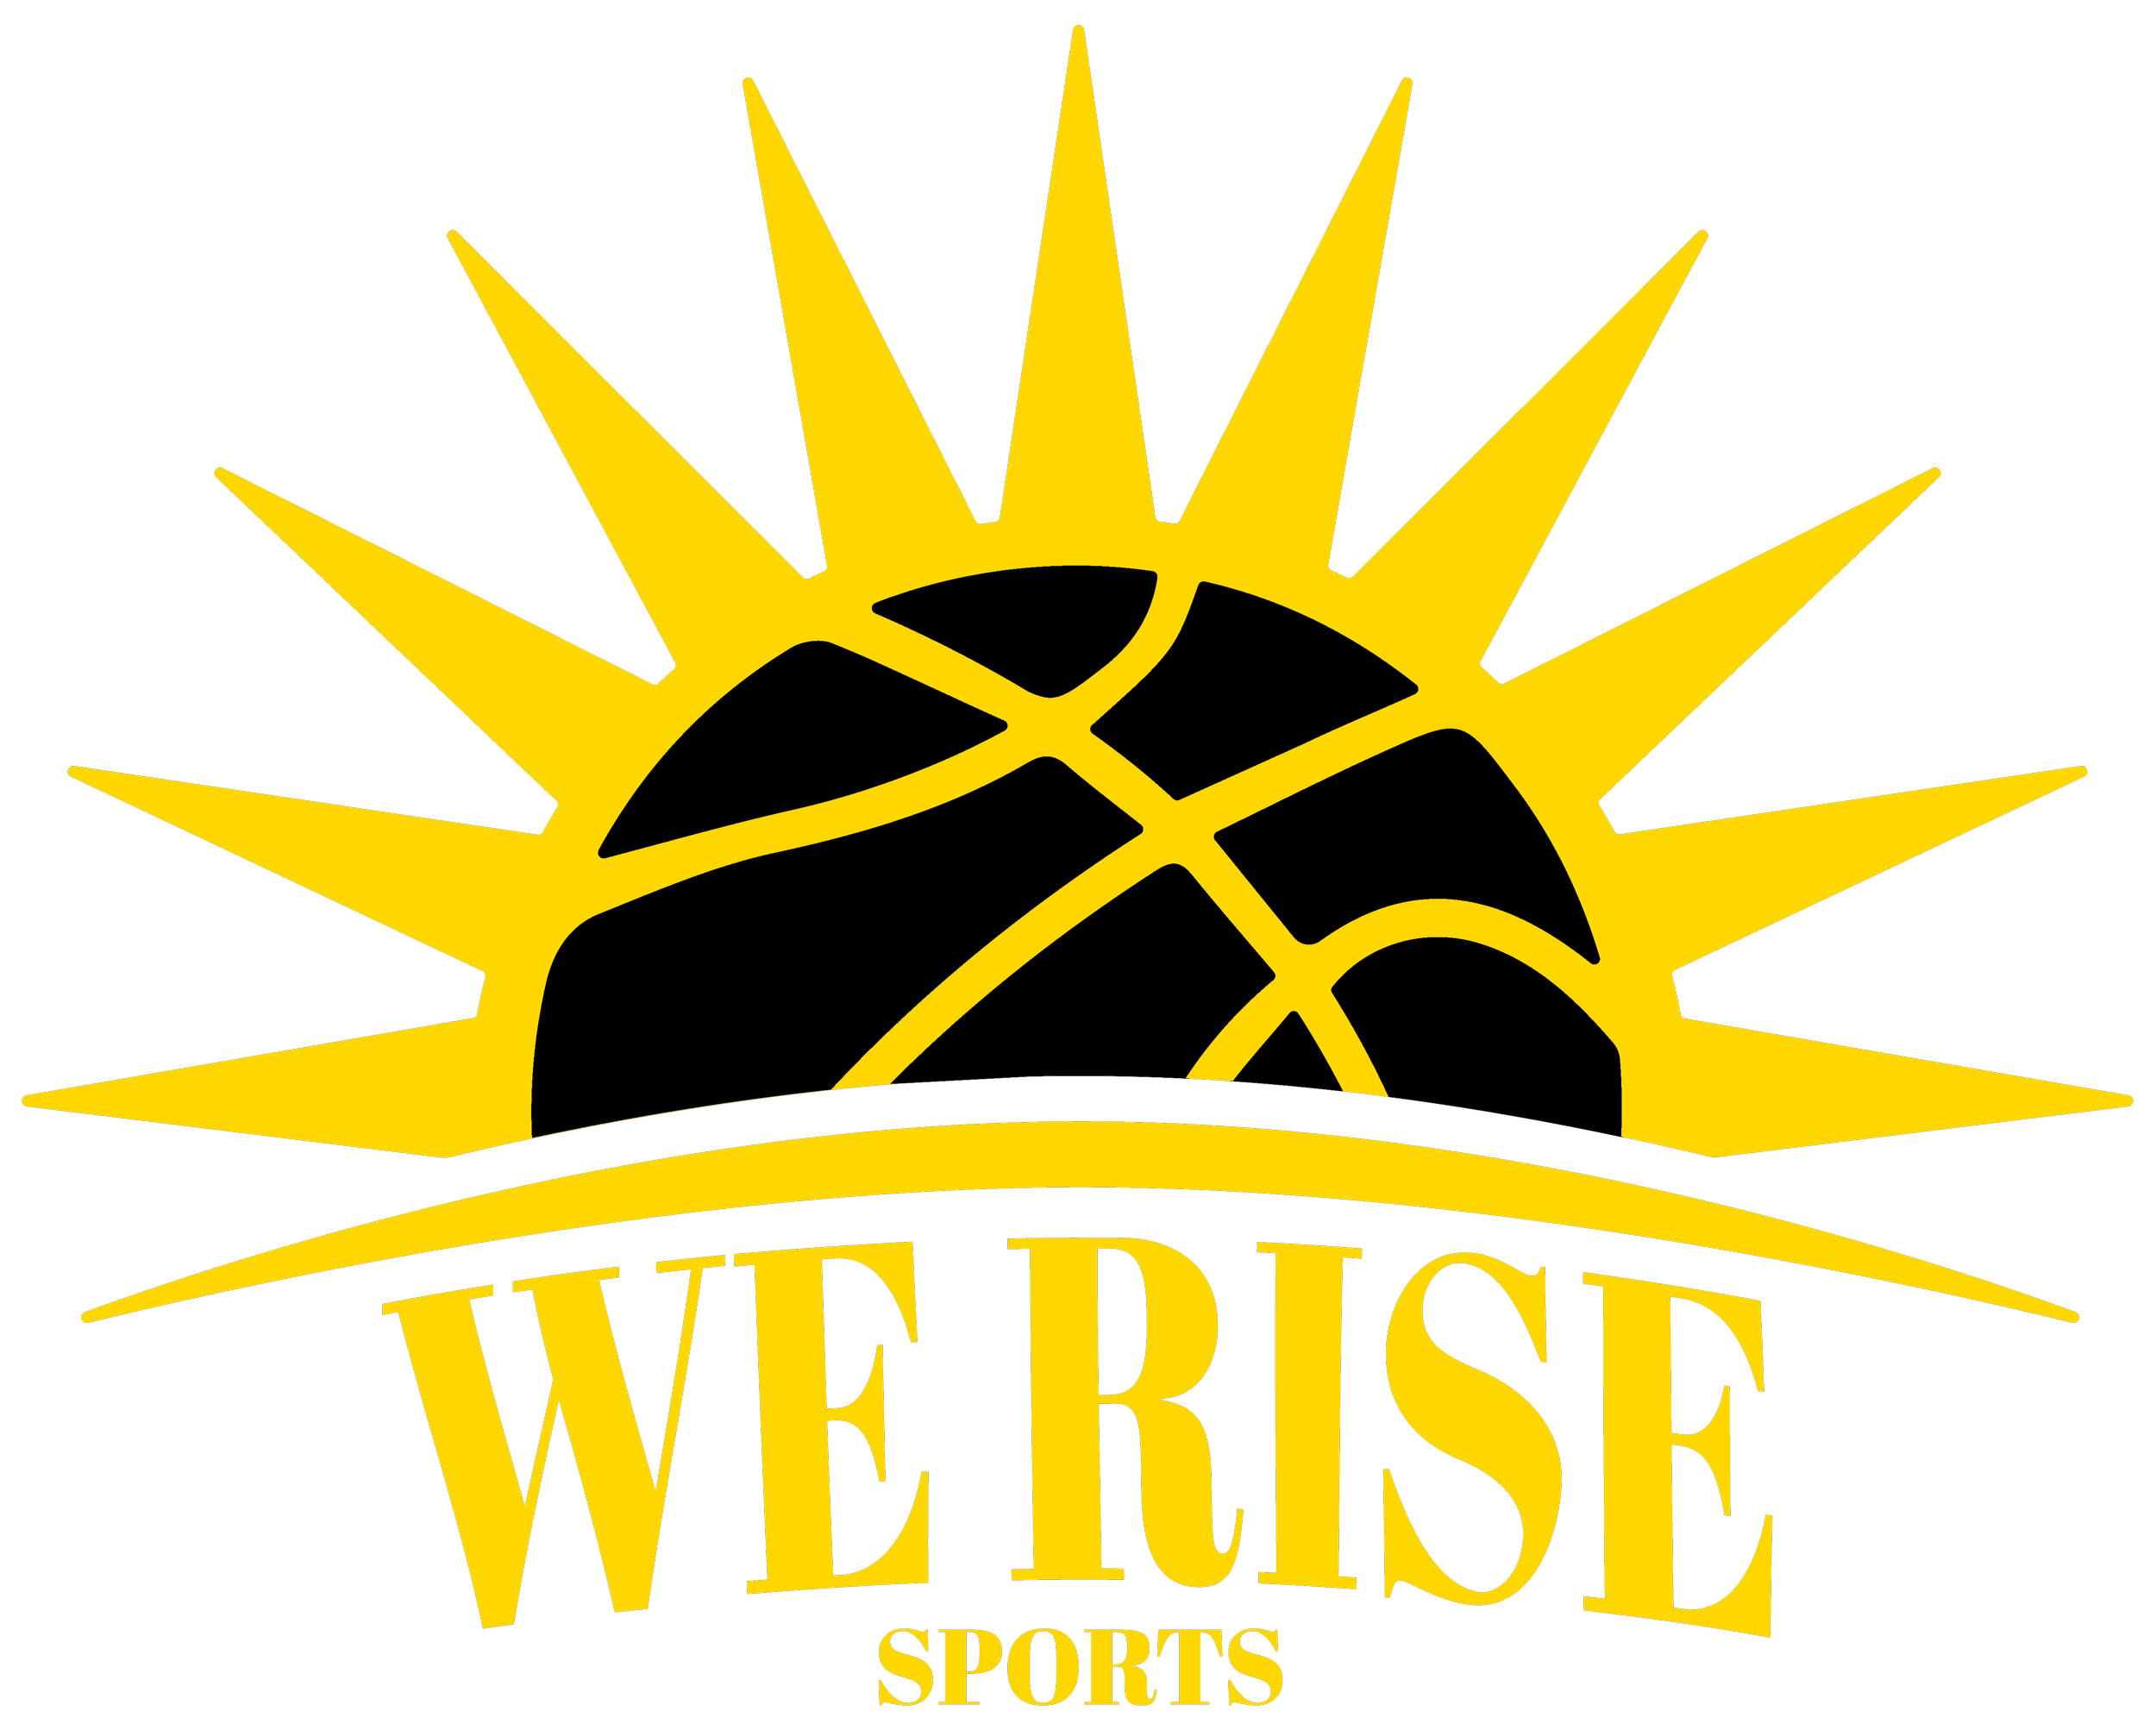 We Rise Sports LLC